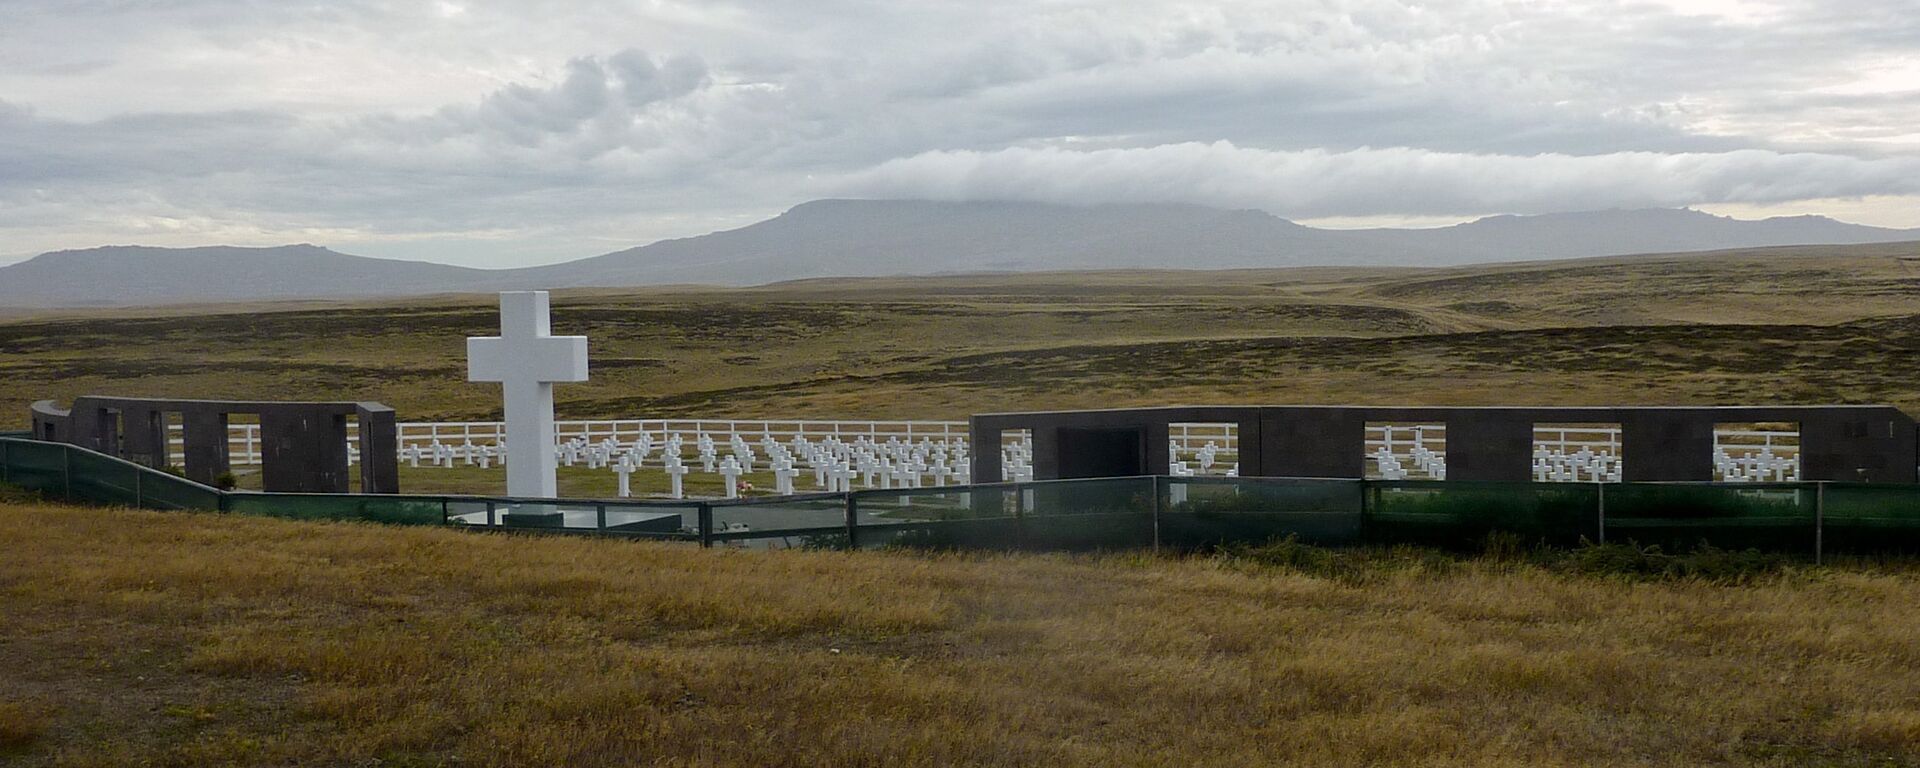 El Cementerio de Darwin en Malvinas - Sputnik Mundo, 1920, 09.08.2021